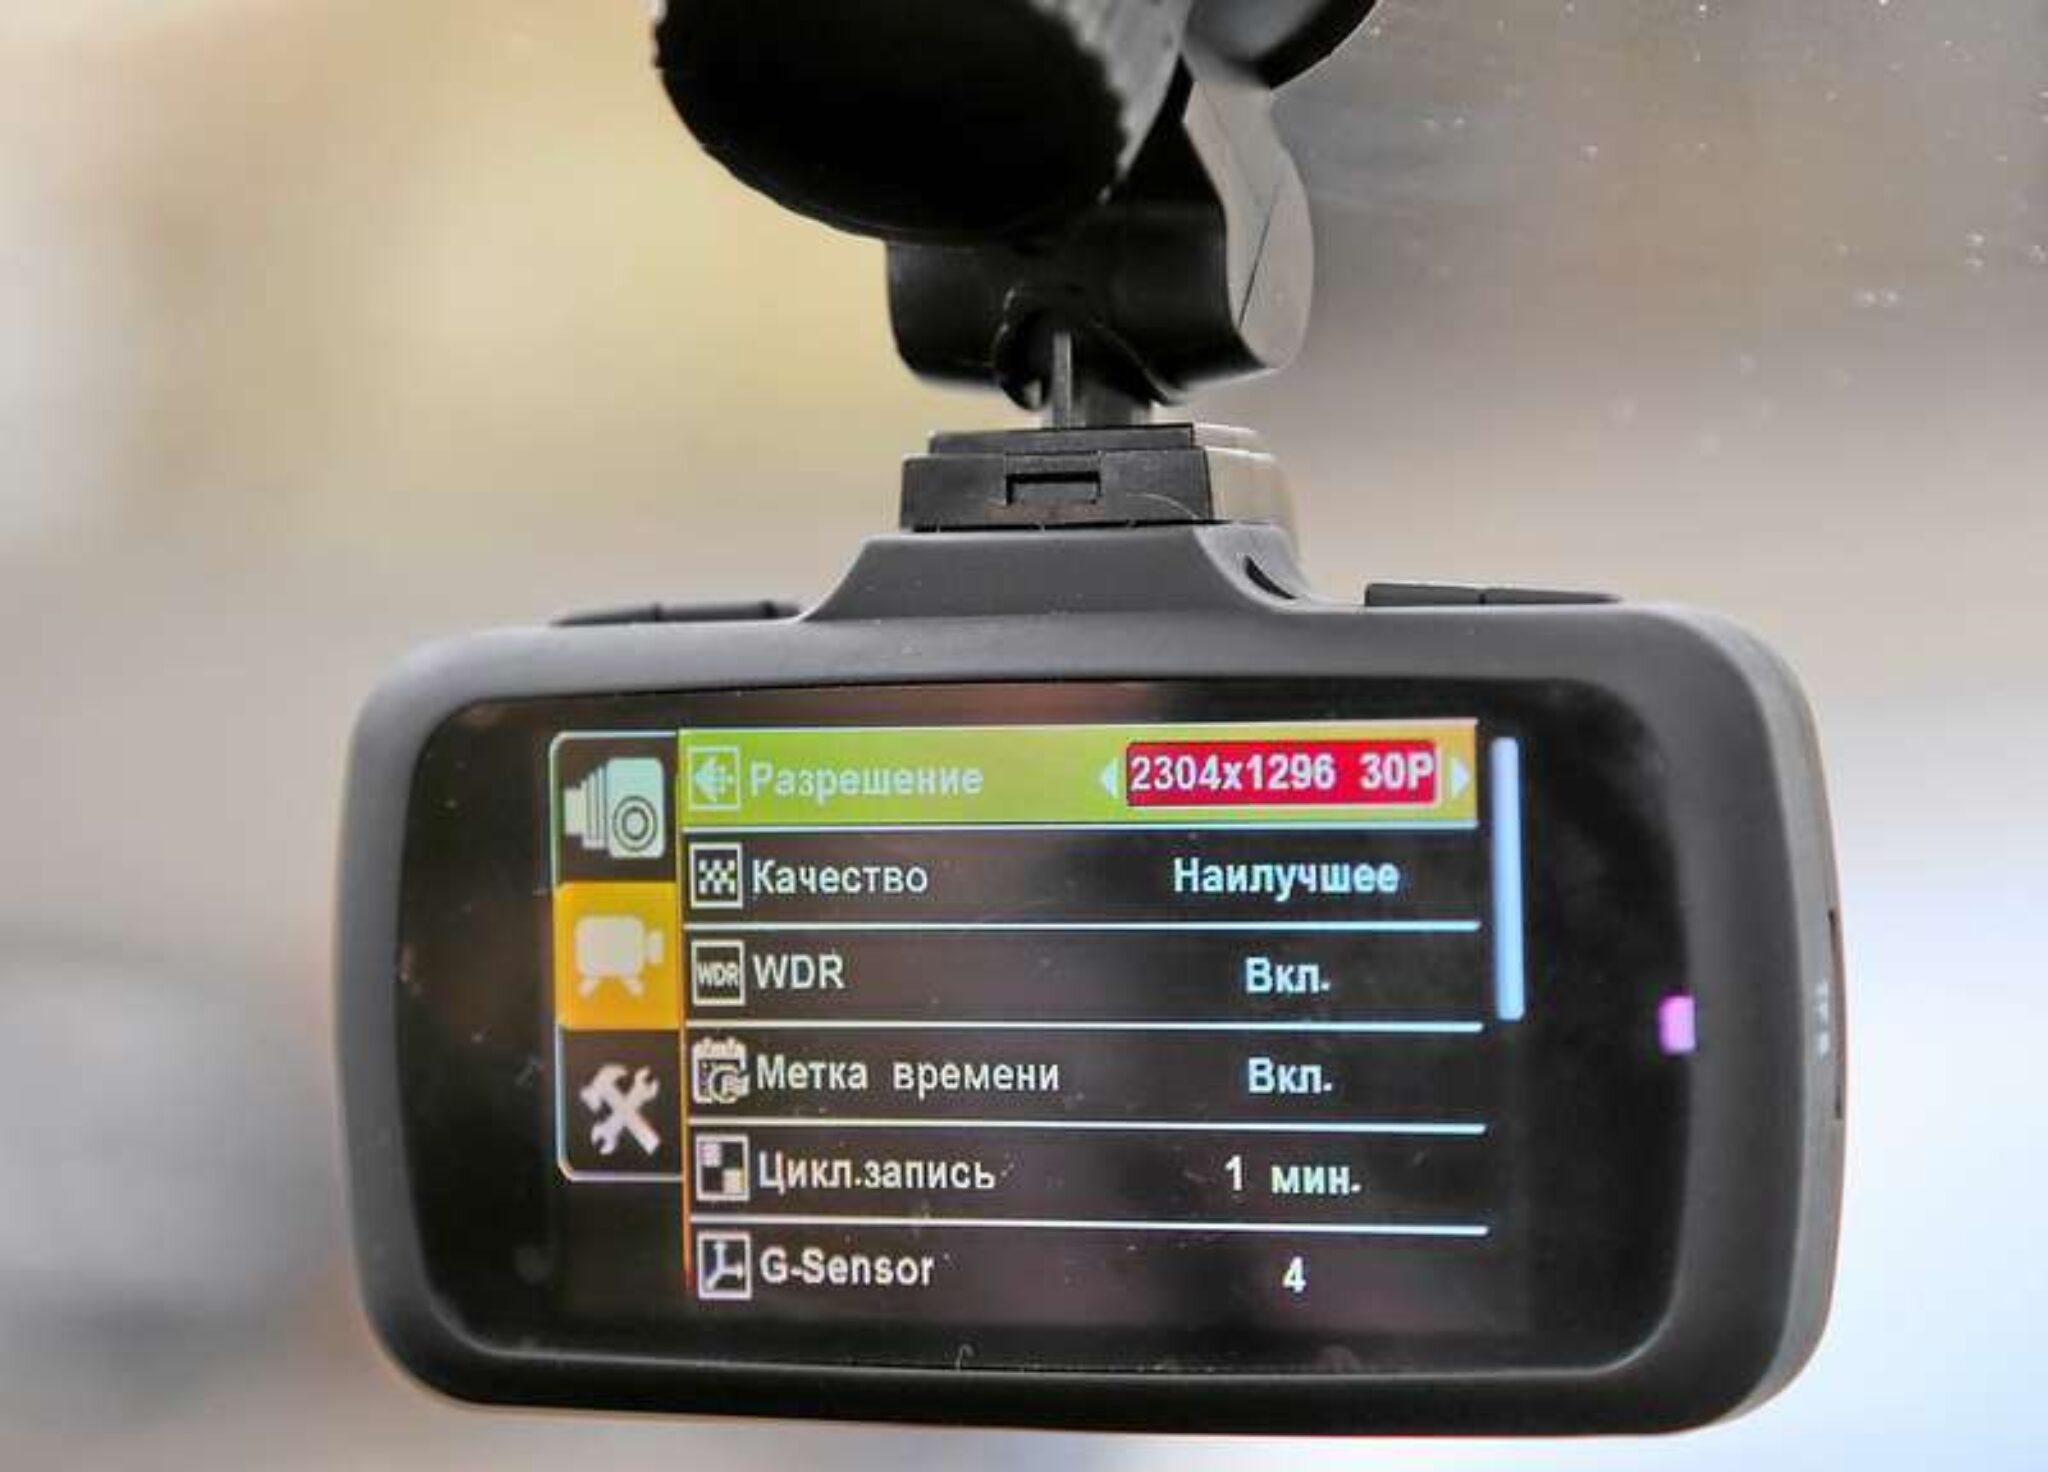 Как выбрать регистратор. GPS модуль для видеорегистратора. Видеорегистратор с GPS модулем. GPS В видеорегистраторе. Хороший видеорегистратор.